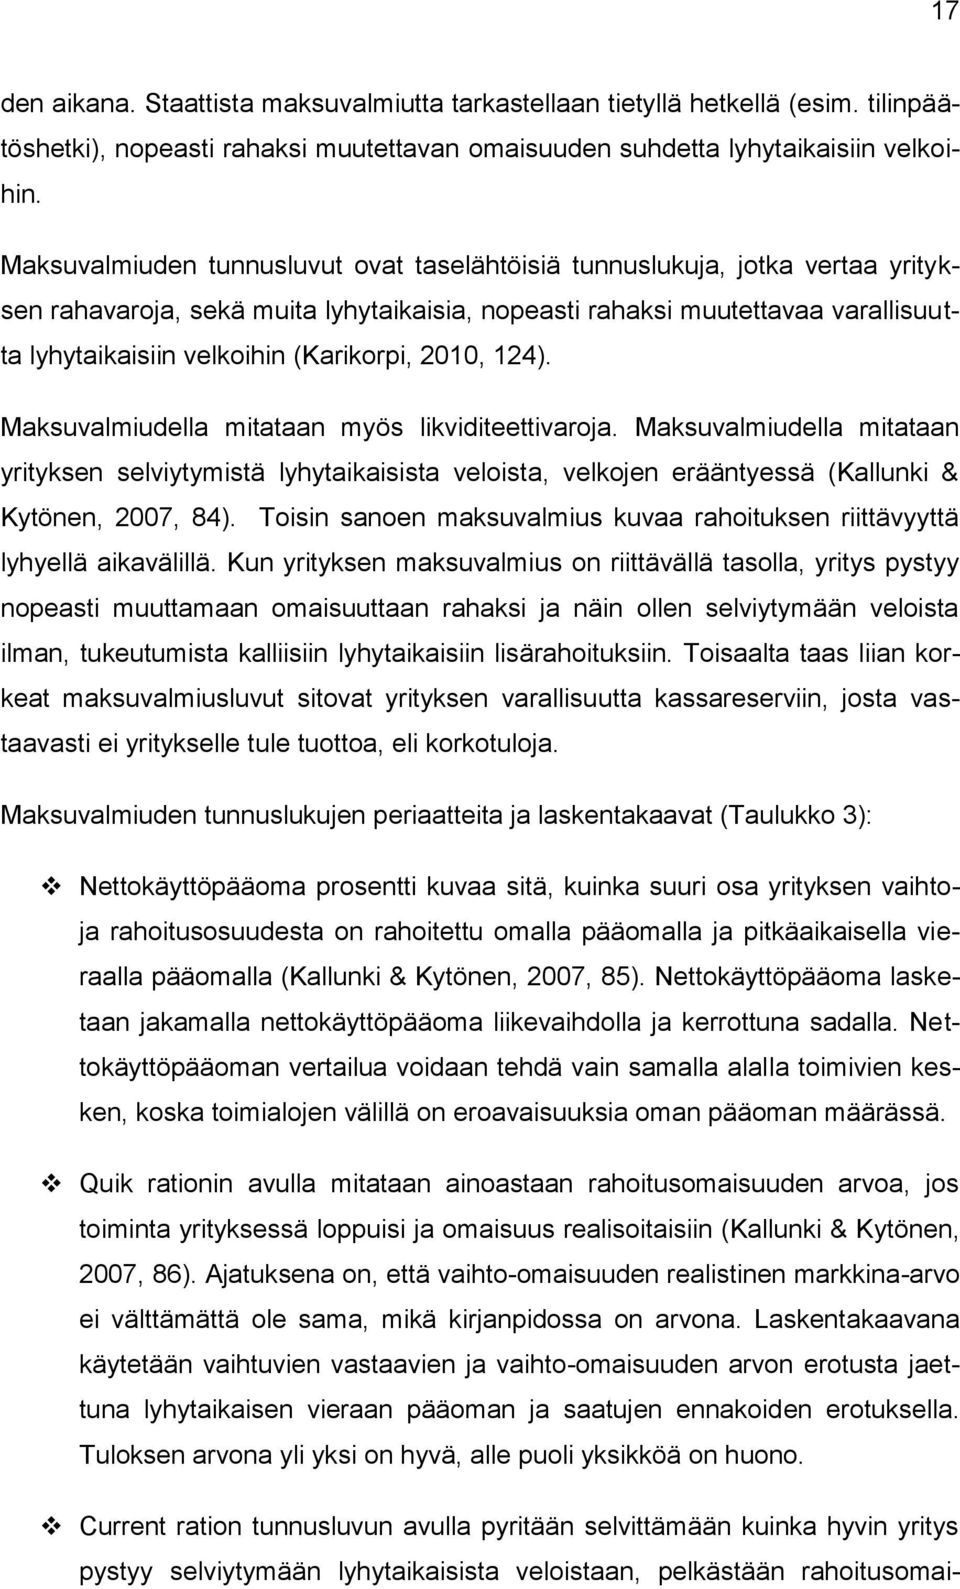 (Karikorpi, 2010, 124). Maksuvalmiudella mitataan myös likviditeettivaroja.